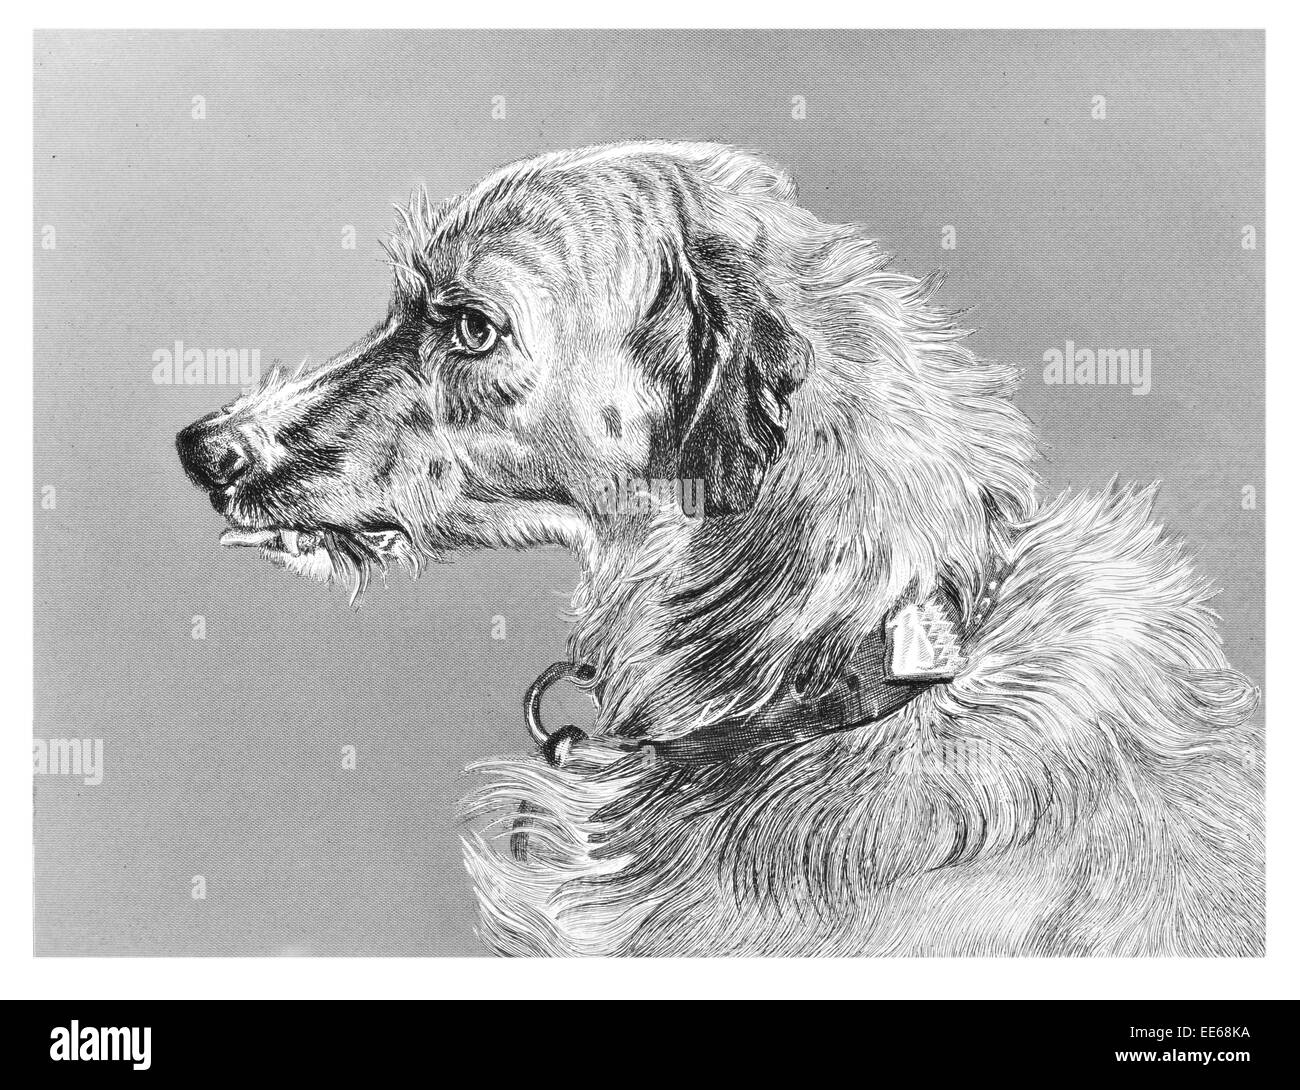 Testa di scottish deerhound sighthound caccia al cervo rosso coursing predator canina pet animale animali domestici collare leale mans migliore amico Foto Stock